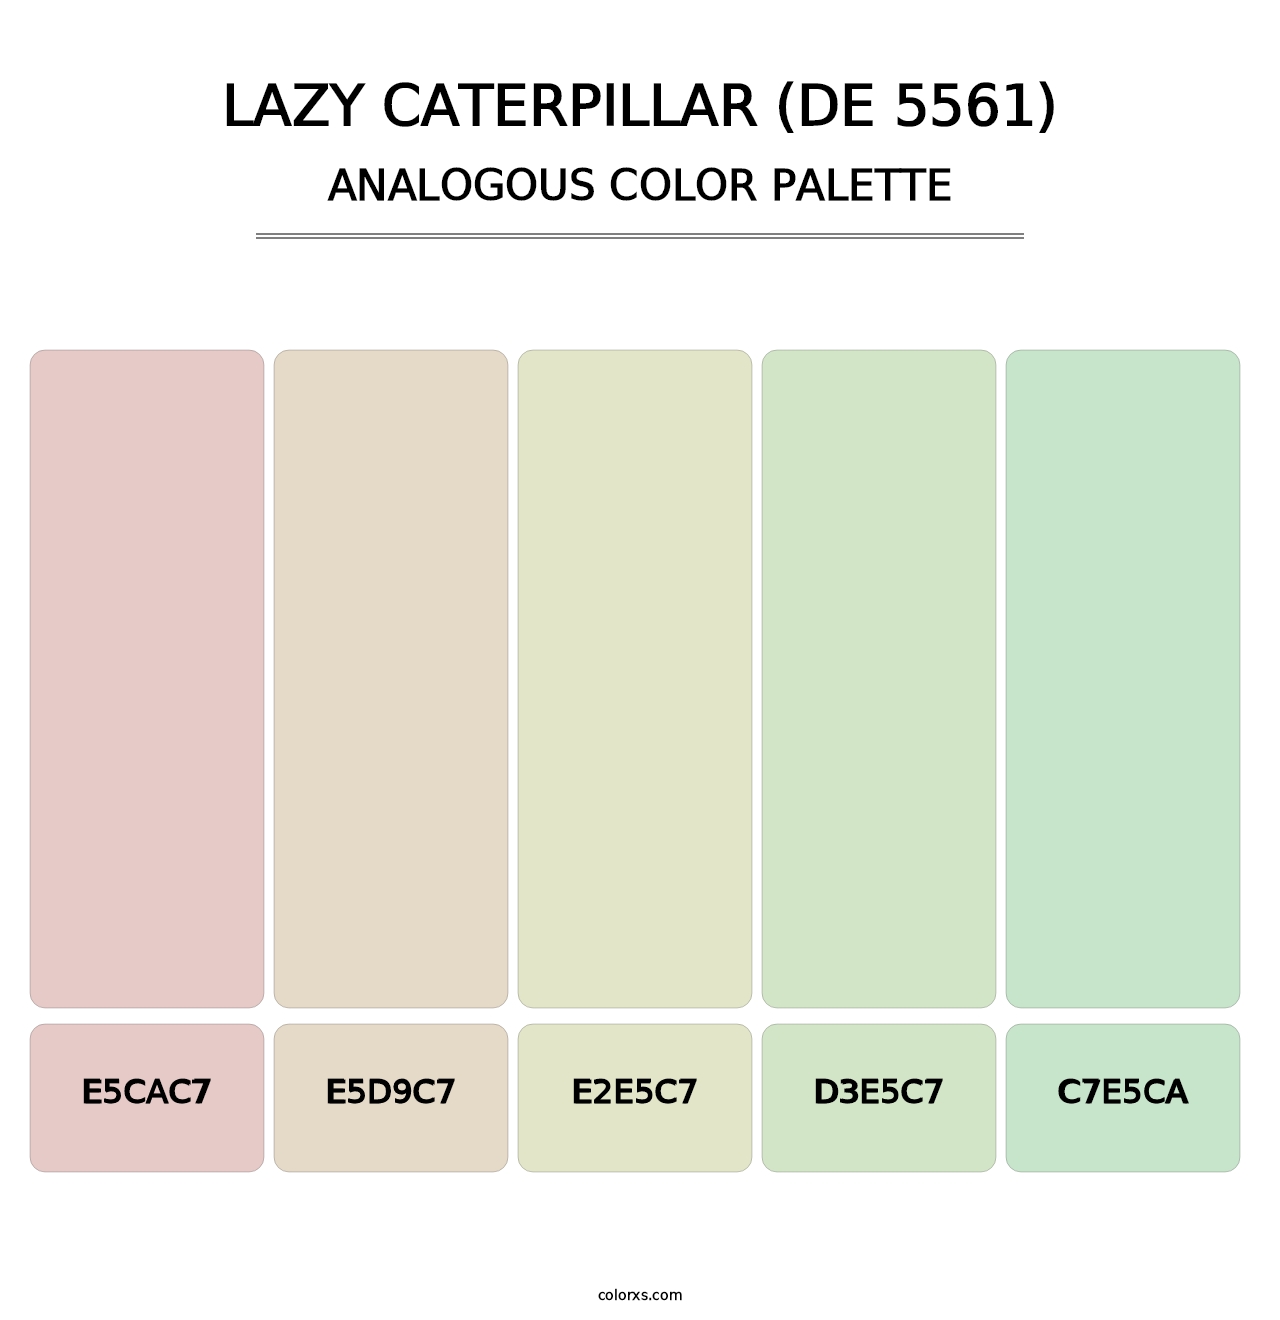 Lazy Caterpillar (DE 5561) - Analogous Color Palette